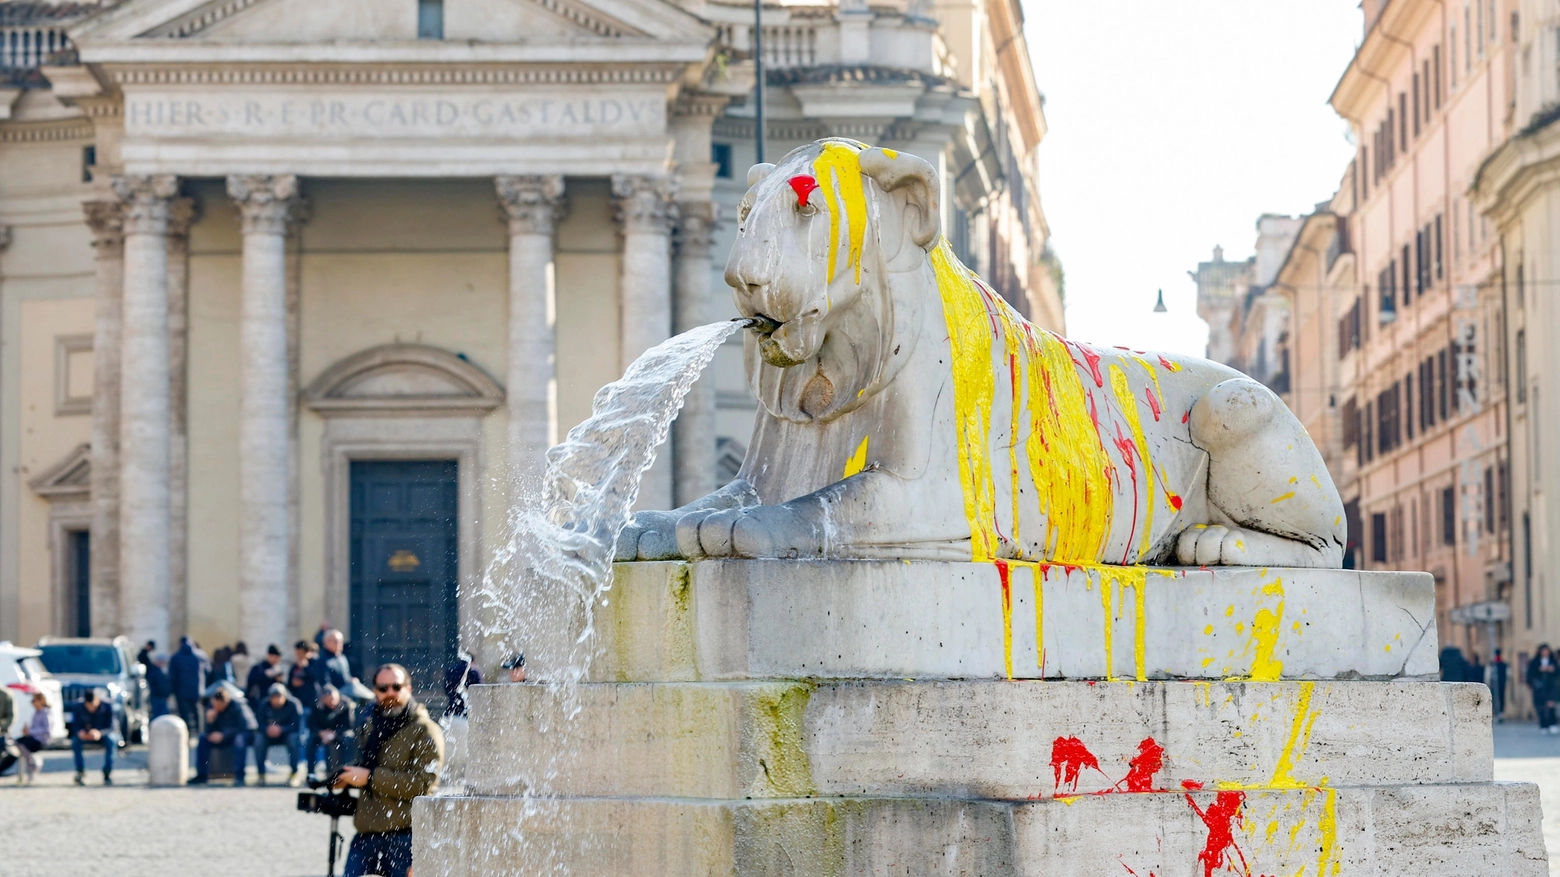 Imbrattata la fontana di Piazza del popolo a Roma